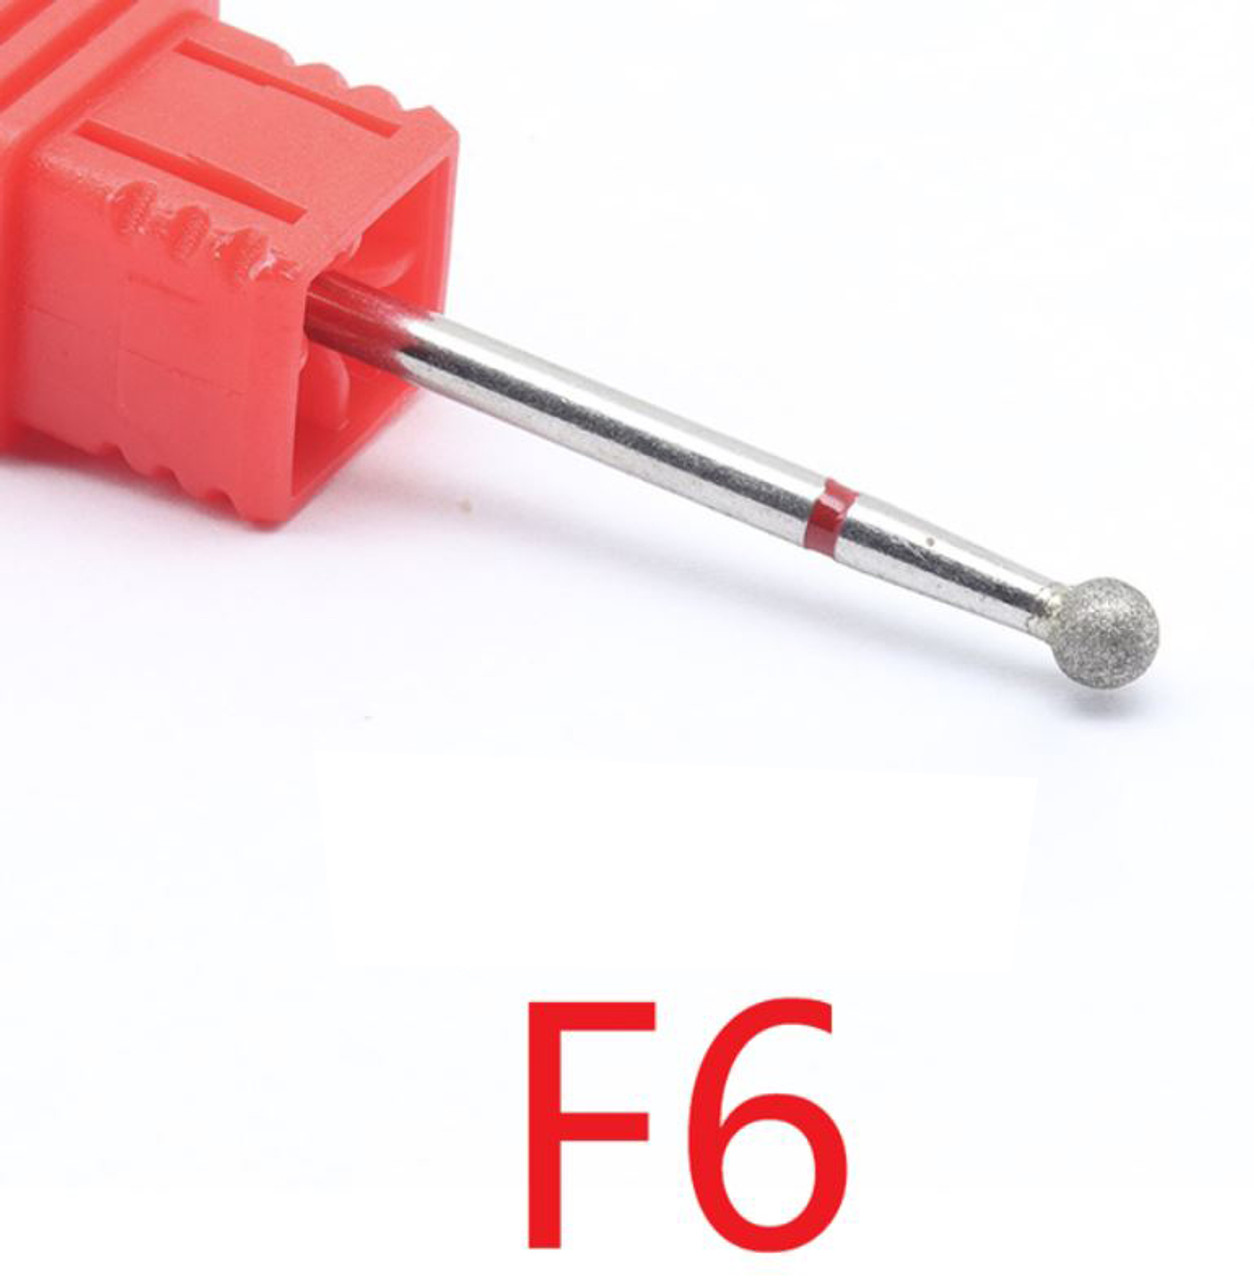 NDi beauty Diamond Drill Bit - 3/32 shank (FINE) - F6